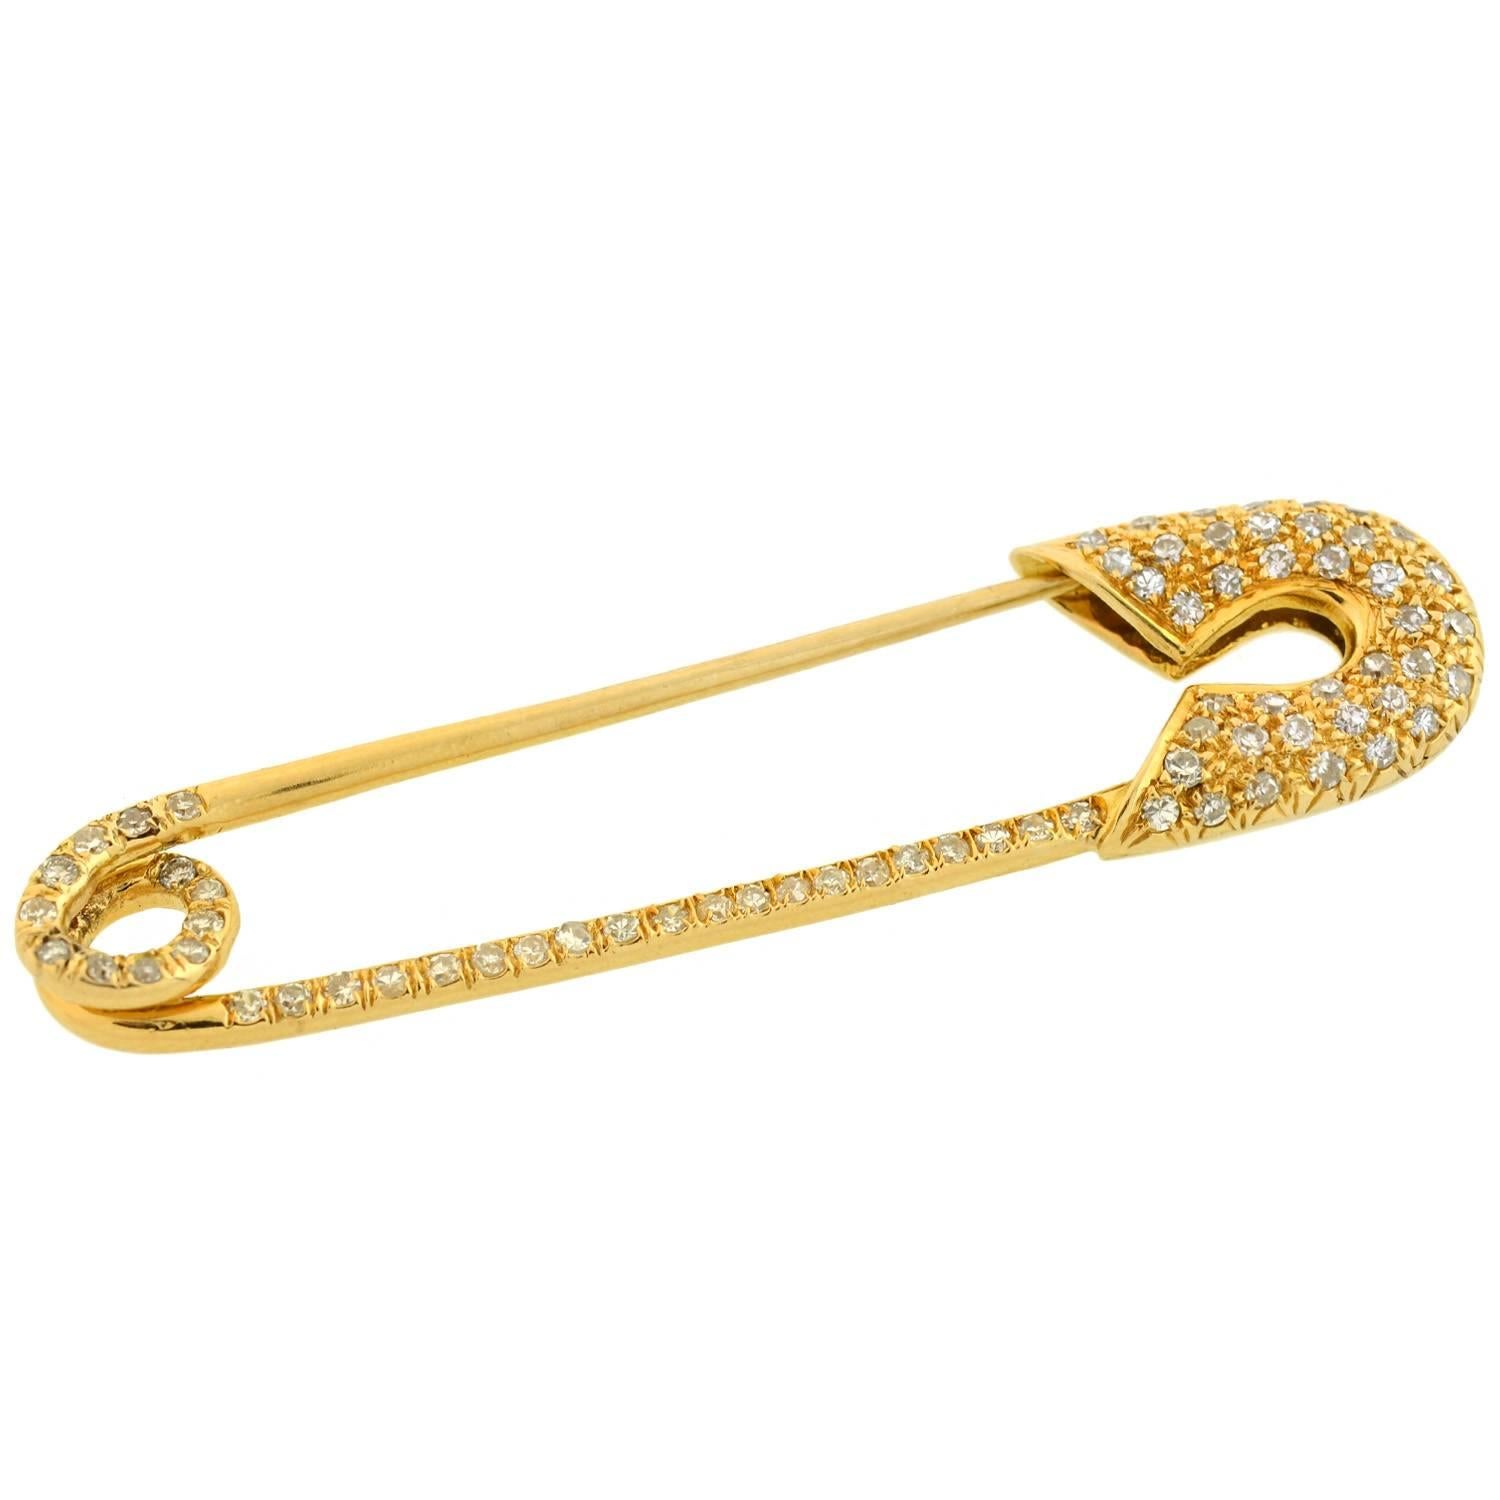 Diese diamantene Sicherheitsnadel von Tiffany & Co. ist ein stilvolles Erbstück! Das Design aus 18-karätigem Gelbgold besteht aus einer voll funktionsfähigen Sicherheitsnadel mit einer funkelnden, mit Pavé-Diamanten besetzten Oberfläche. Der